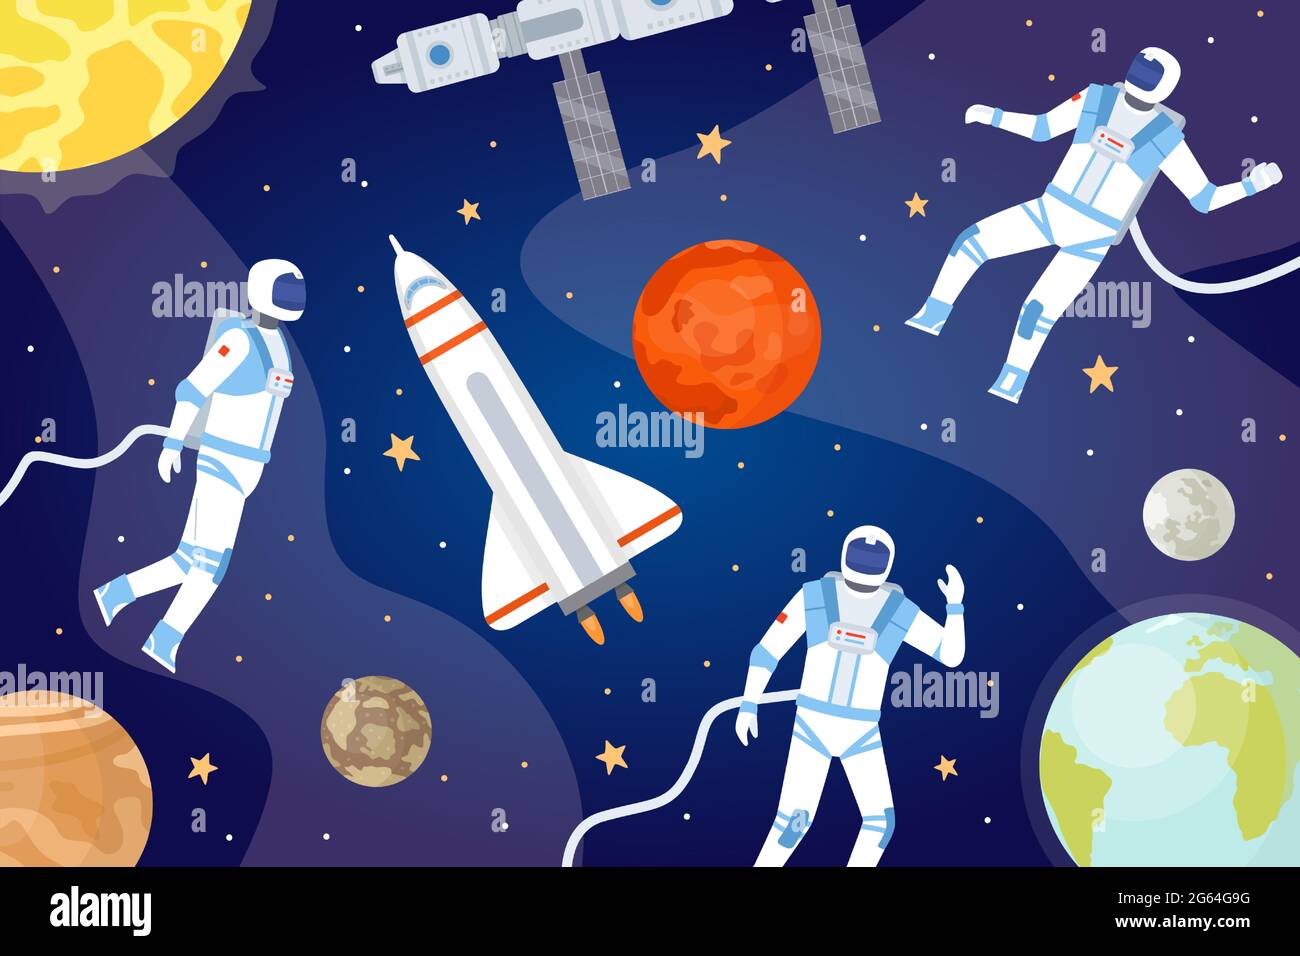 Kosmischer Hintergrund mit Astronauten. Weltraum mit Raumschiff, Planeten, Sternen und Raumfahrer, die den Kosmos erkunden. Cartoon Universum Vektor Banner Stock Vektor